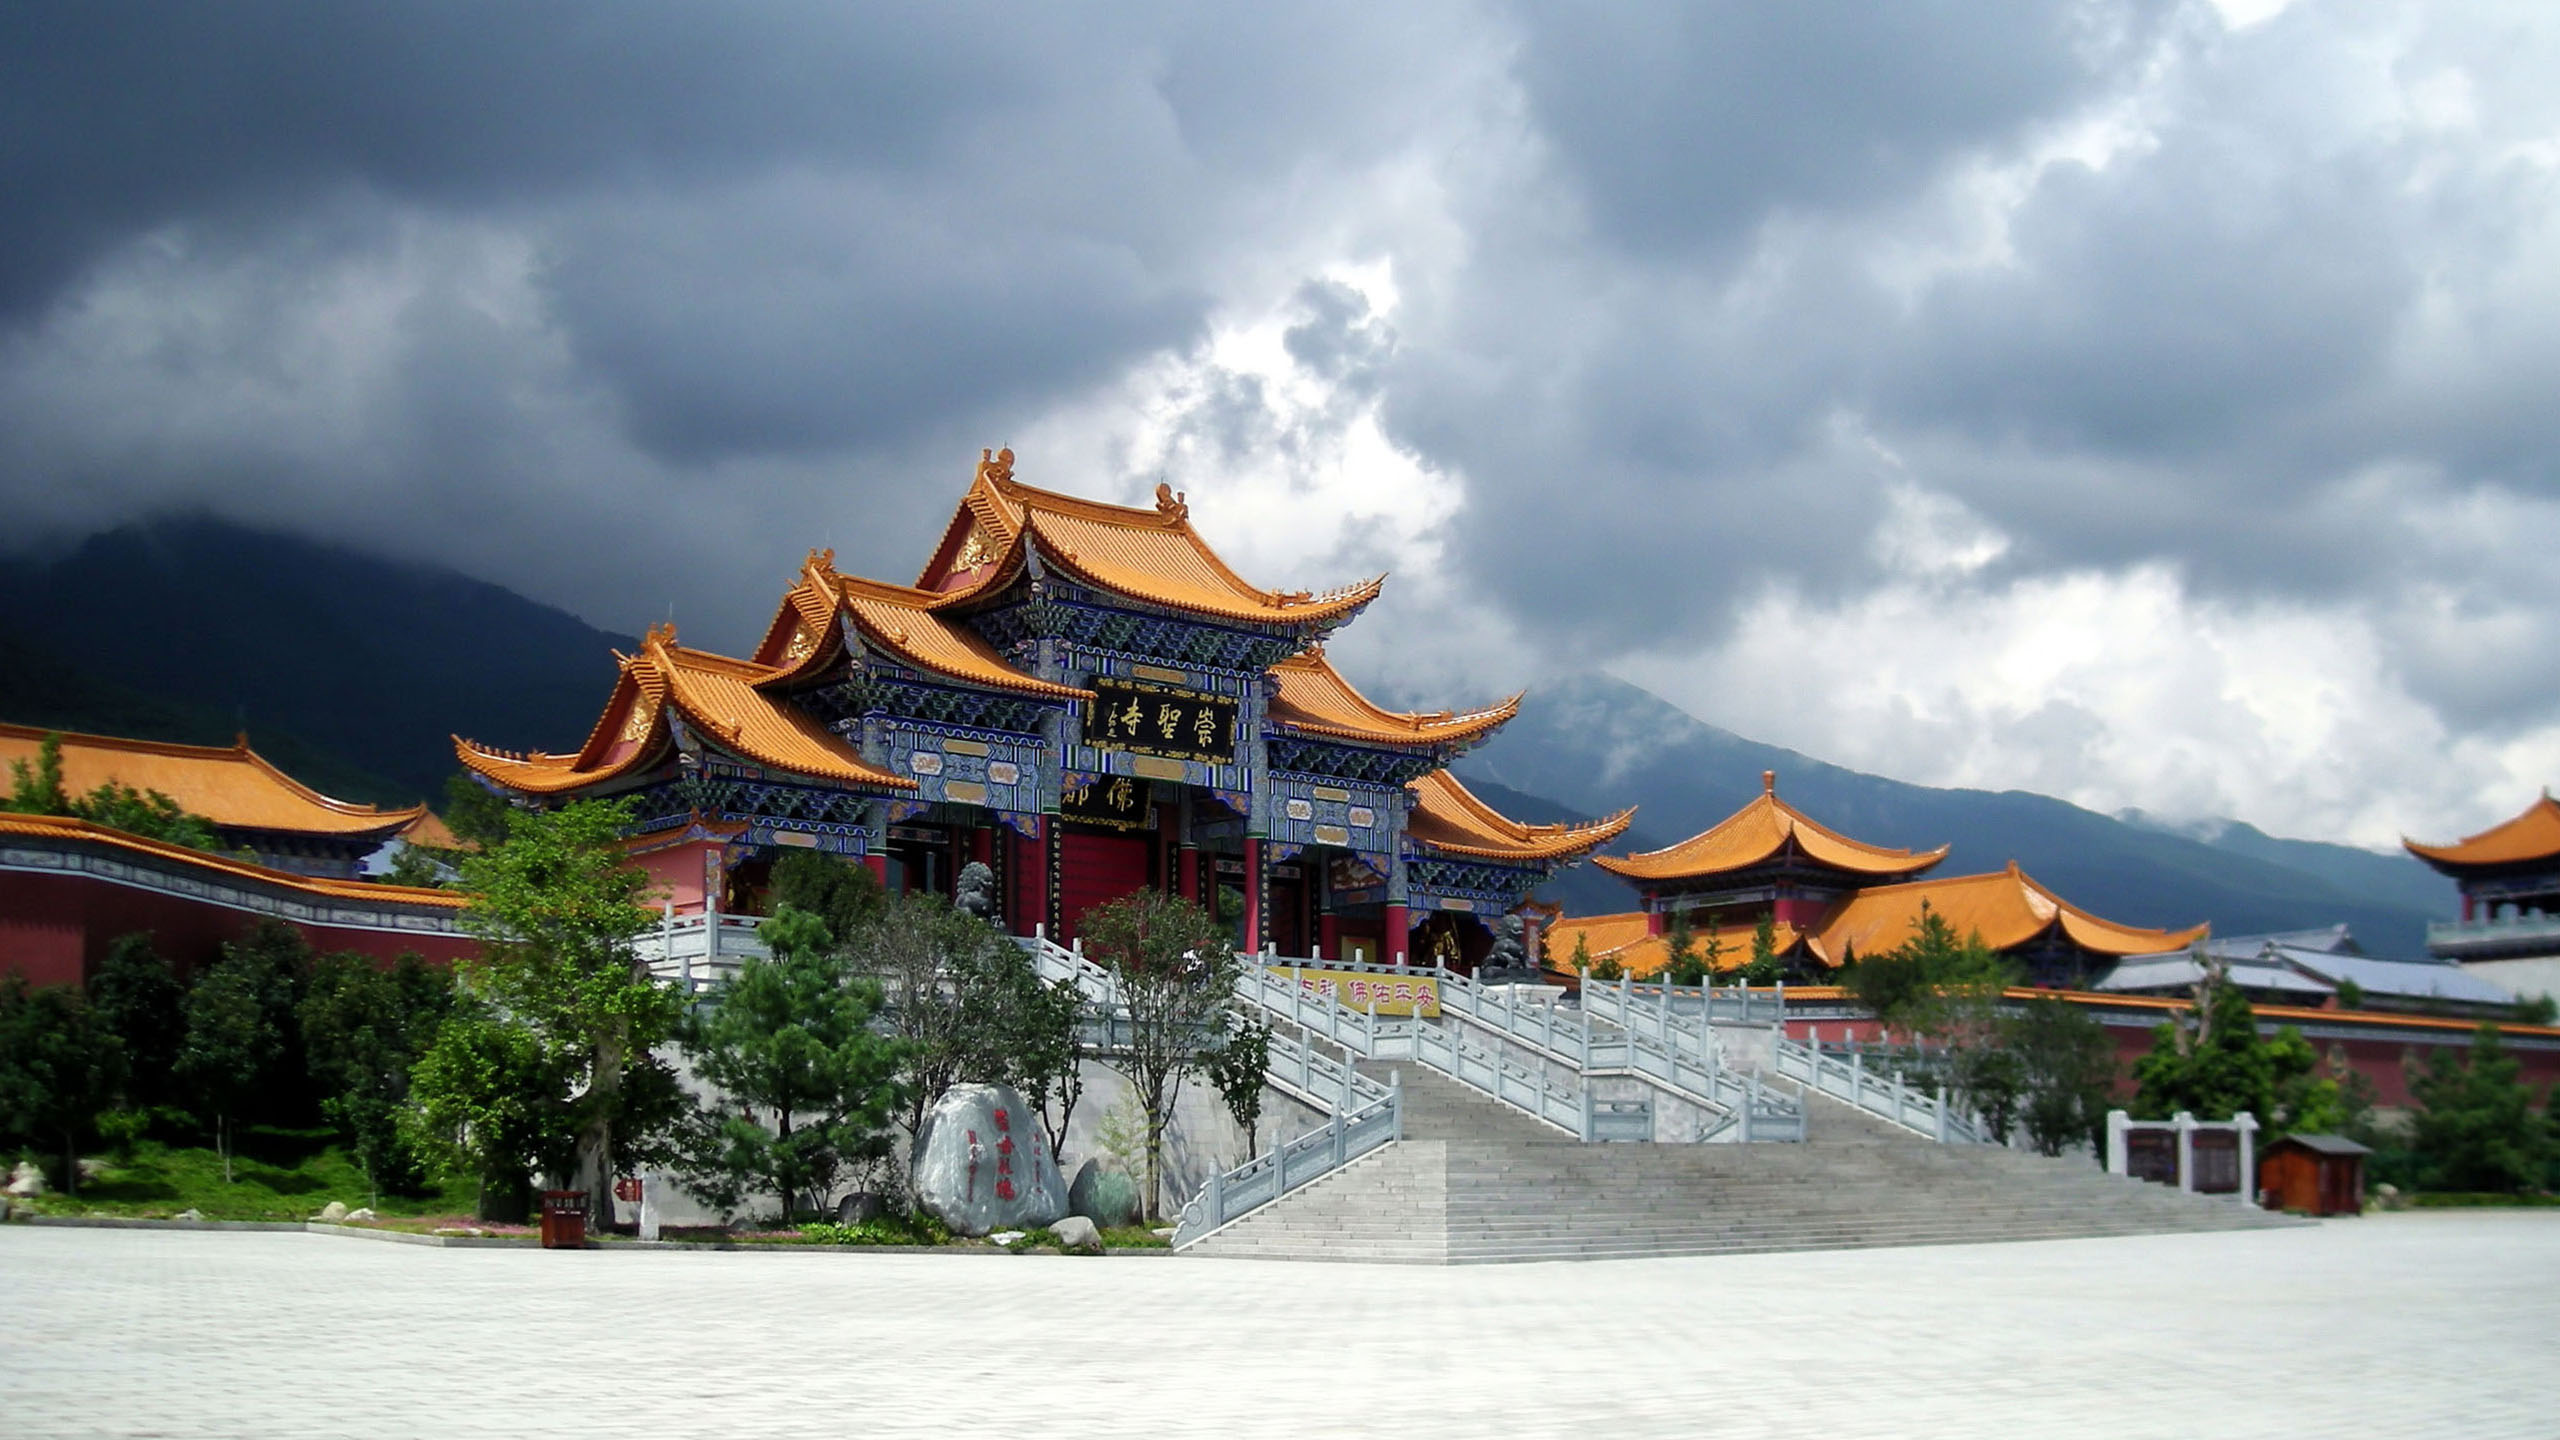 Hình nền Trung Quốc mang đến vẻ đẹp và sự phóng khoáng của văn hóa Trung Hoa. Từ những mái nhà bình dị cho đến vẻ đẹp lộng lẫy của đền đài, hãy để chúng trở thành nơi bạn vượt thời gian và tự do bay lượn trong không gian.